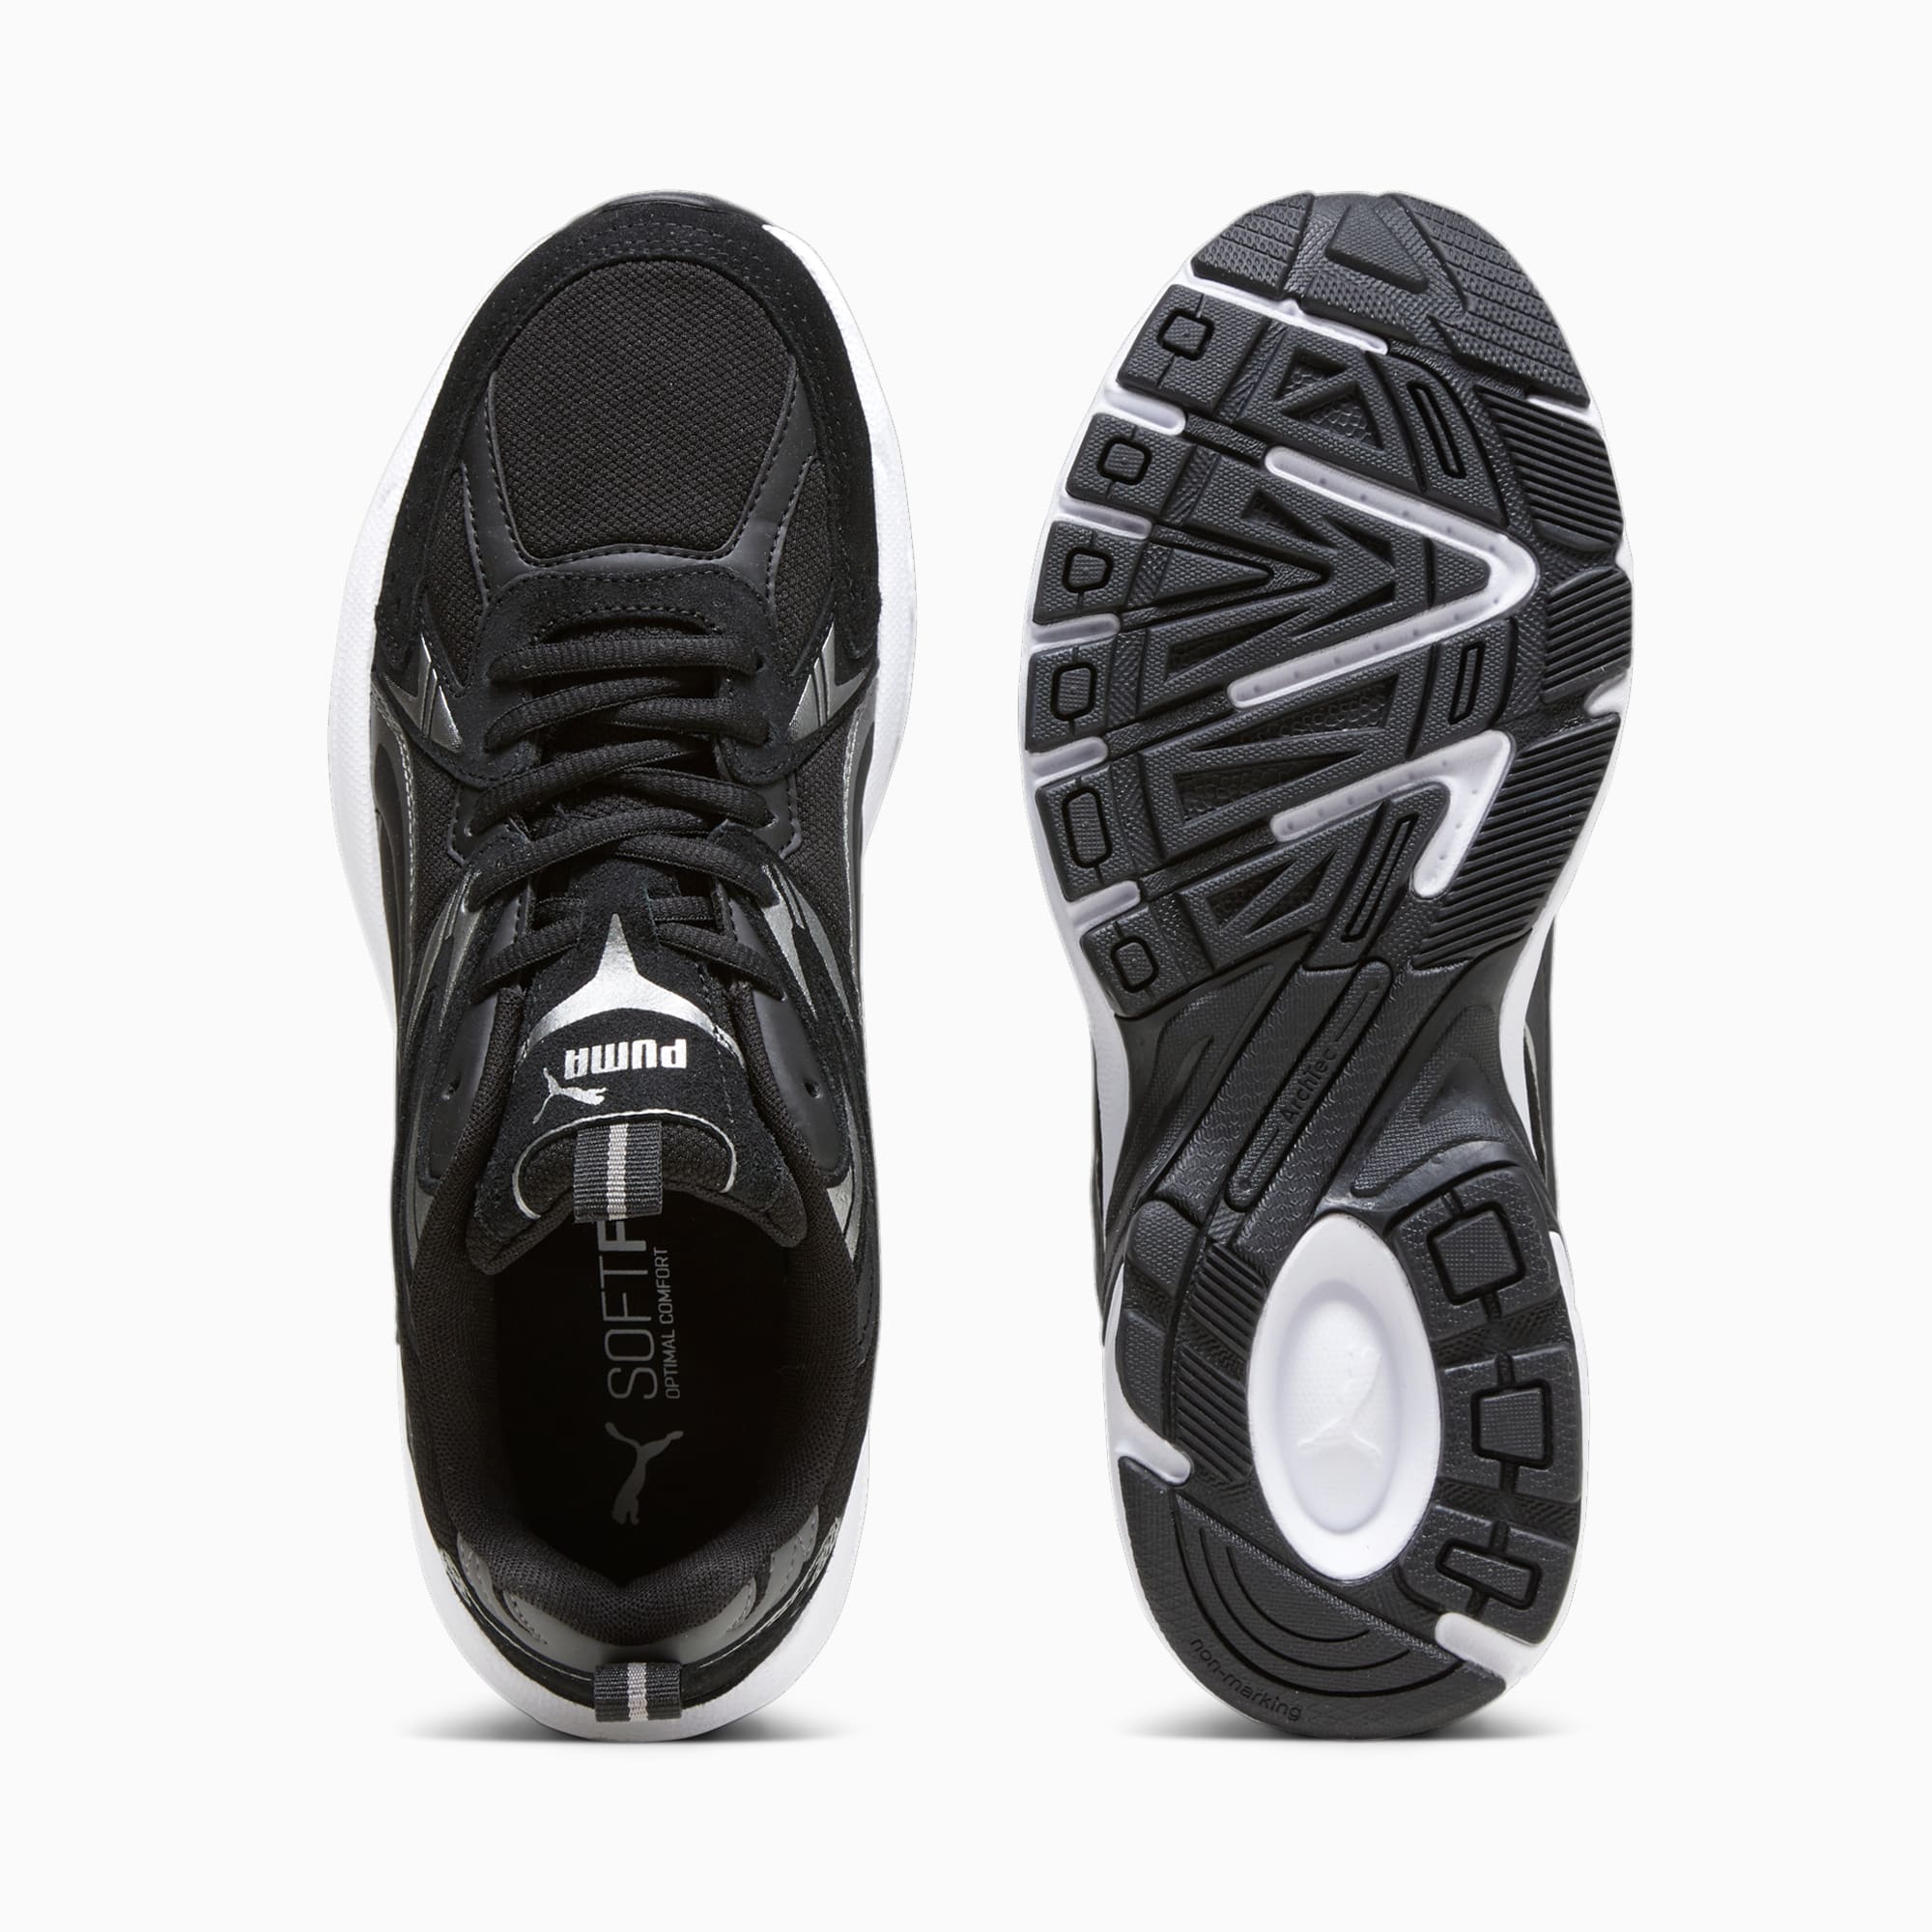 PUMA Chaussure Sneakers Milenio Tech Suede, Noir/Gris/Argent